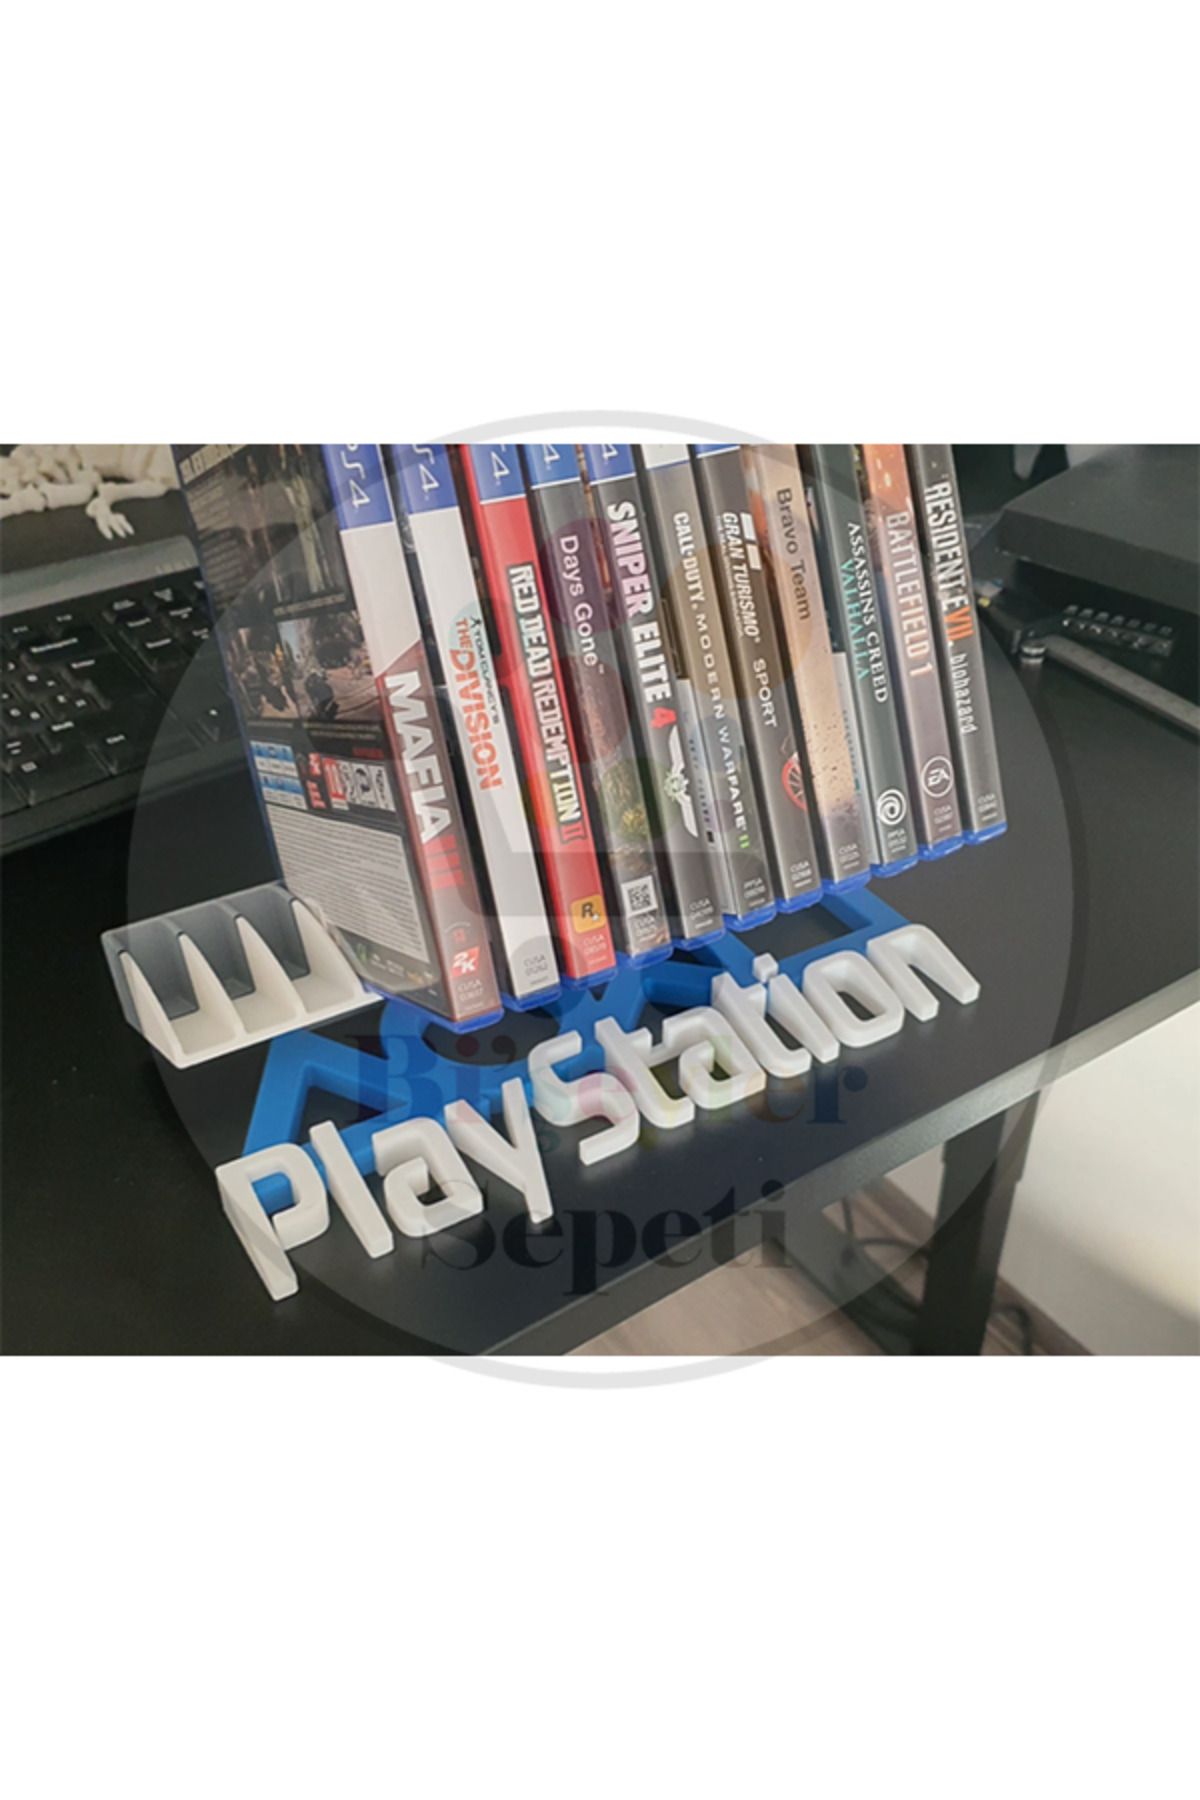 Bi'şeyler Sepeti PS5 Playstation 5 Oyun Stand Game Case (14 OYUN KAPASİTELİ)